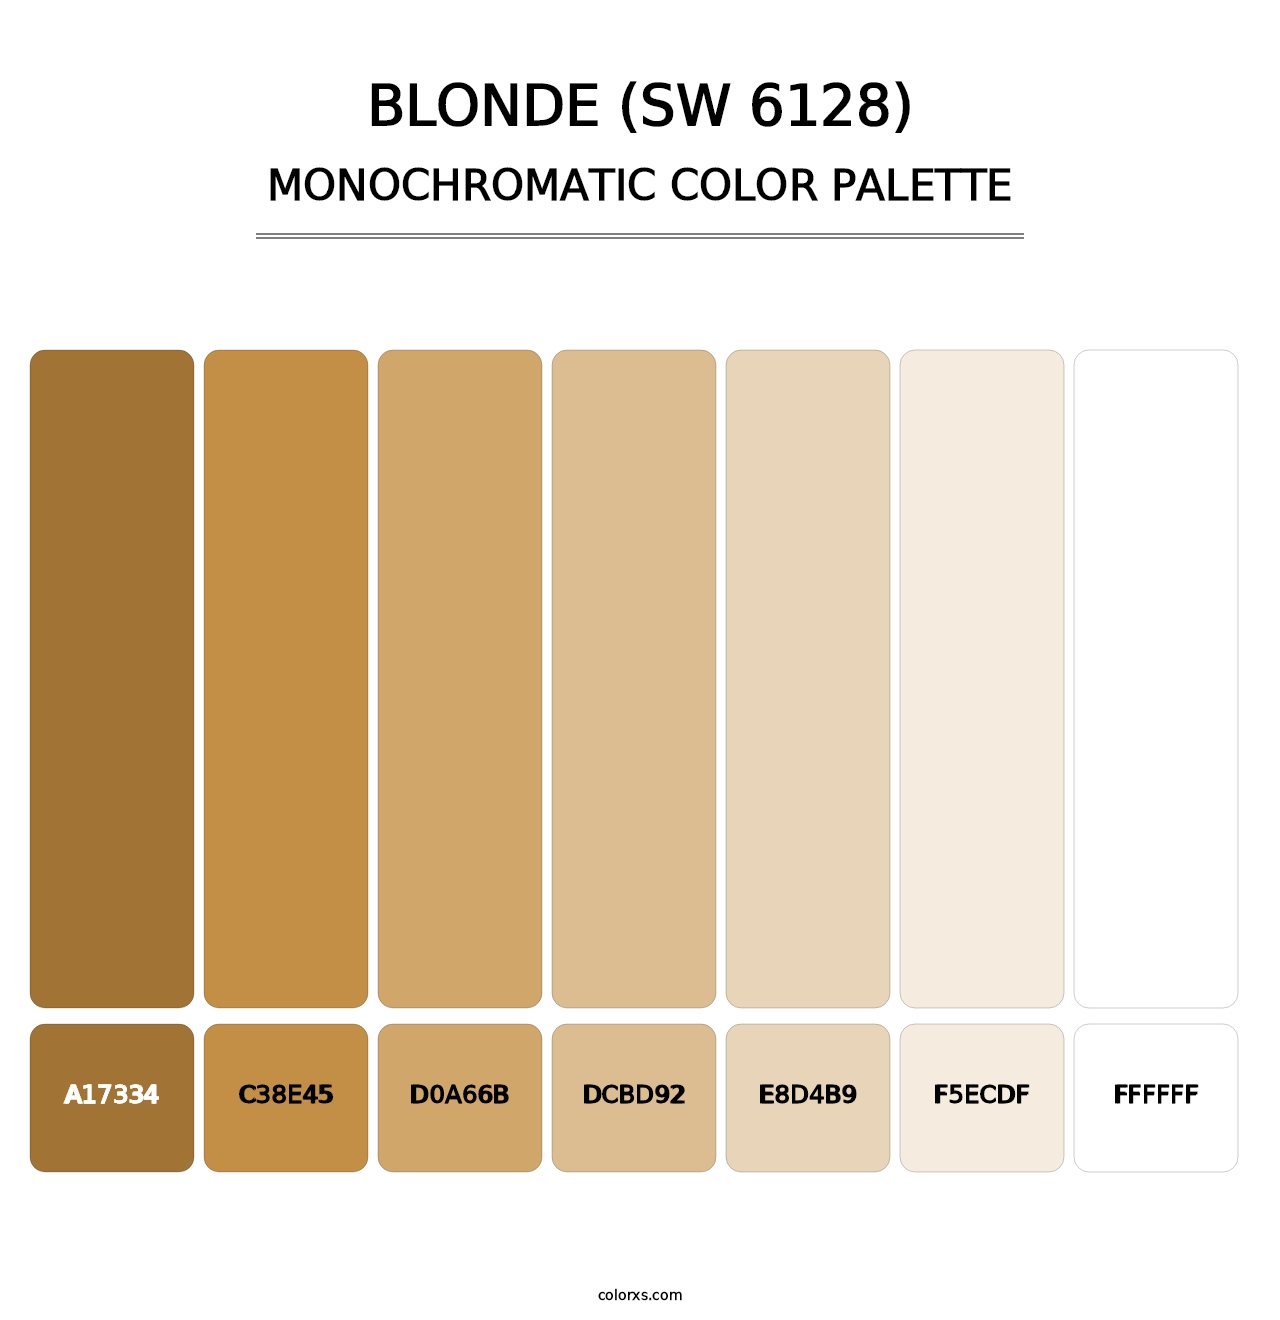 Blonde (SW 6128) - Monochromatic Color Palette